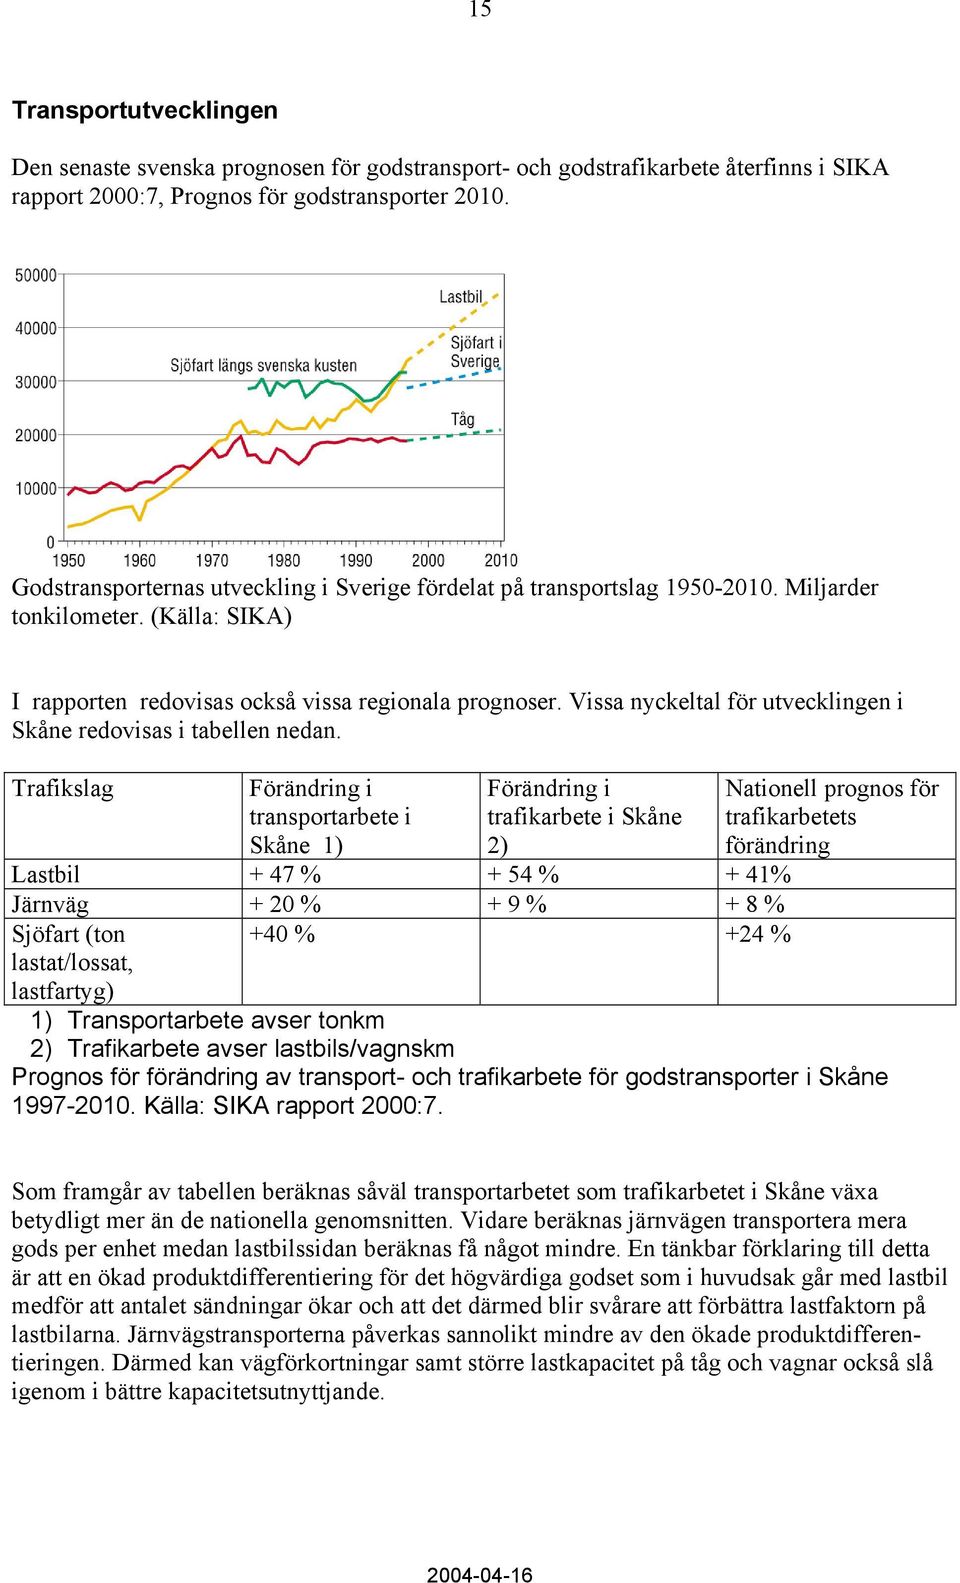 Vissa nyckeltal för utvecklingen i Skåne redovisas i tabellen nedan.